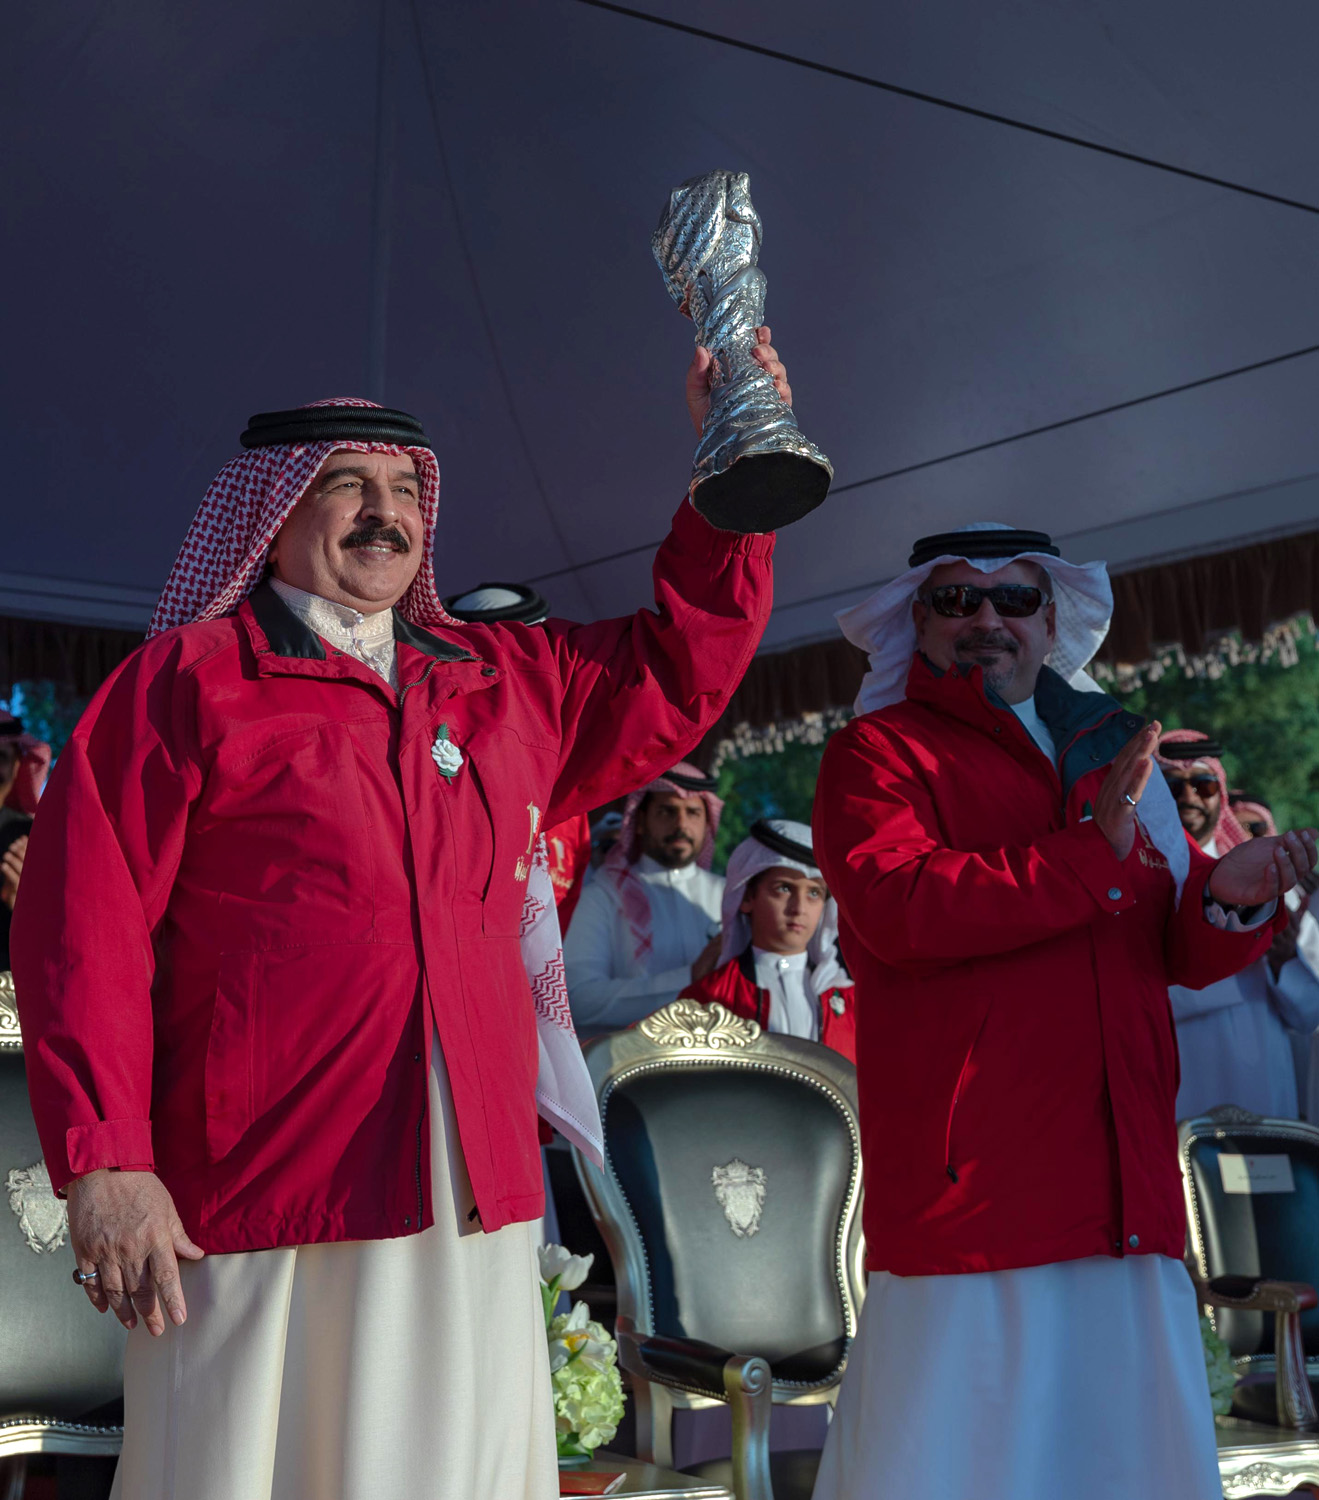 تهنئة بإحراز لقب بطولة كأس الخليج العربي الرابعة والعشرين